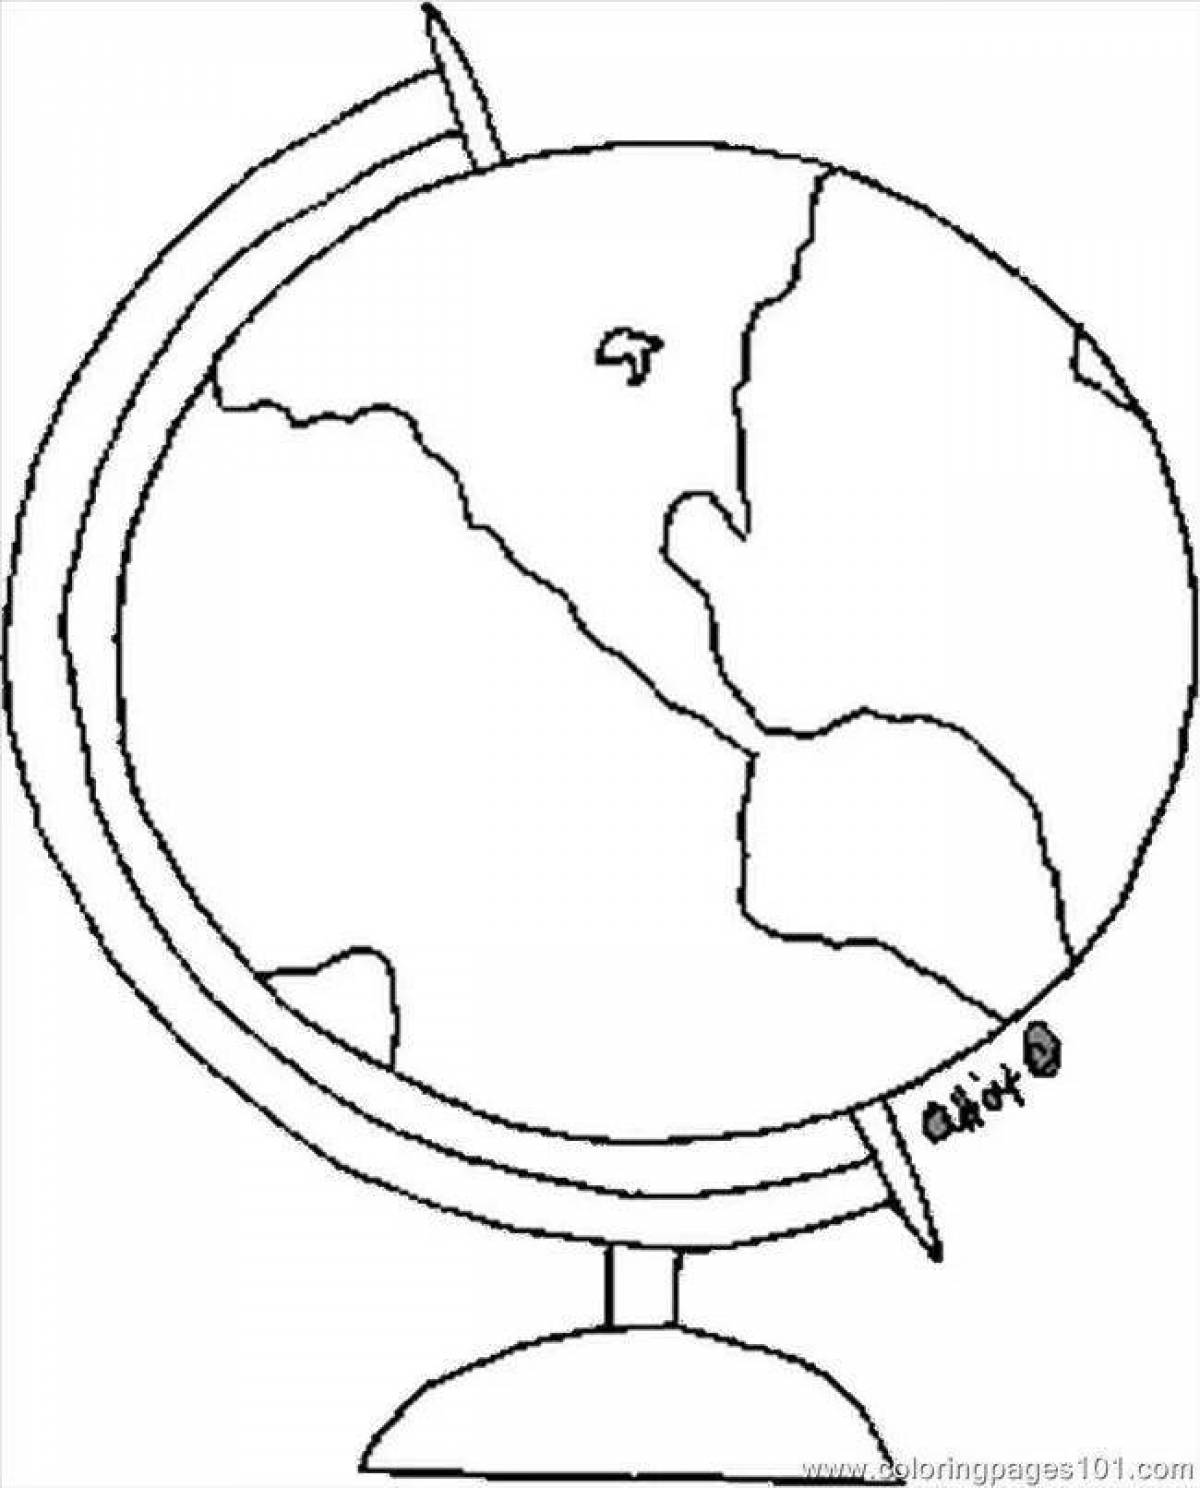 Шаблон глобуса. Глобус раскраска. Глобус раскраска для детей. Раскраска глобуса земли для детей. Контурное изображение глобуса.